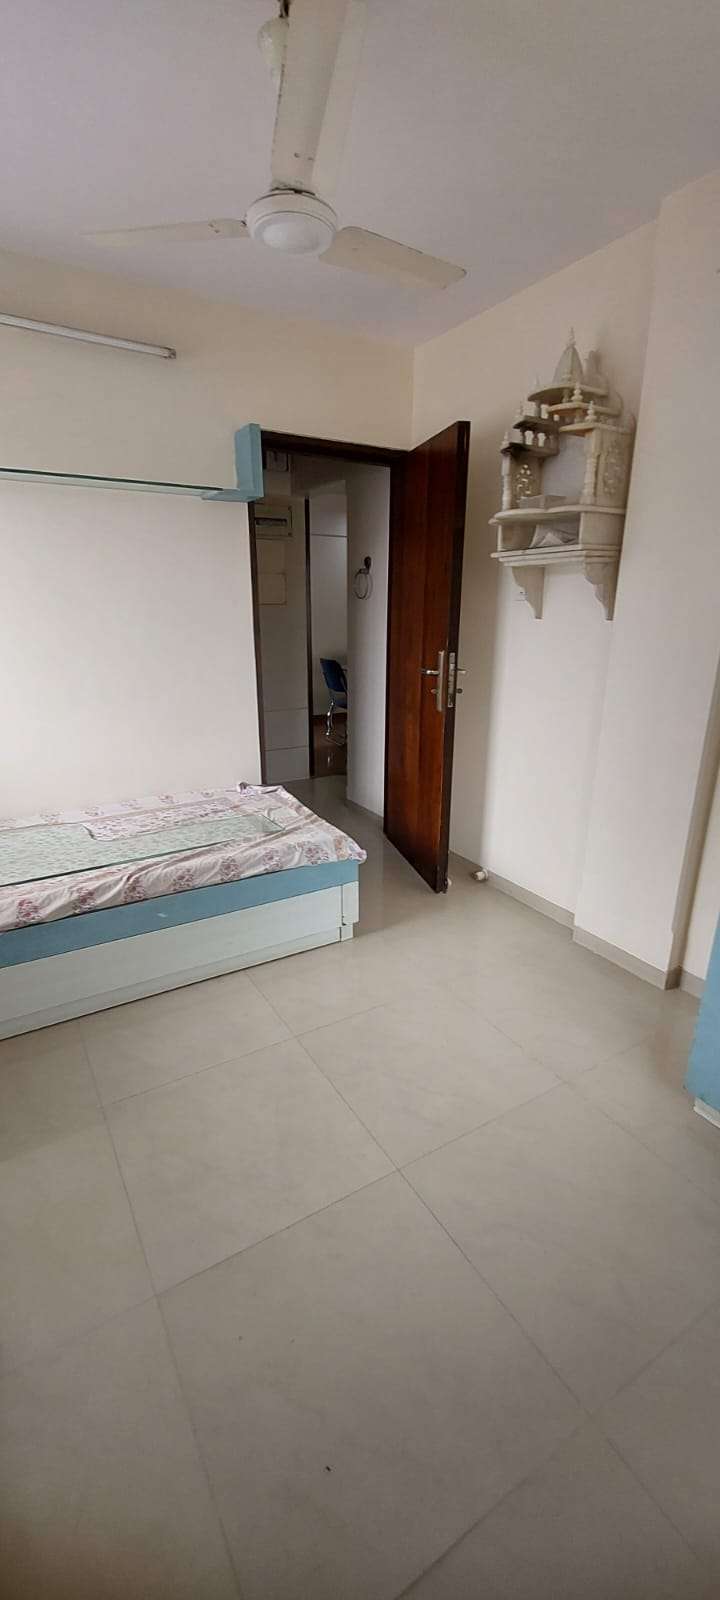 1 Bedroom 470 Sq.Ft. Apartment in Jogeshwari West Mumbai